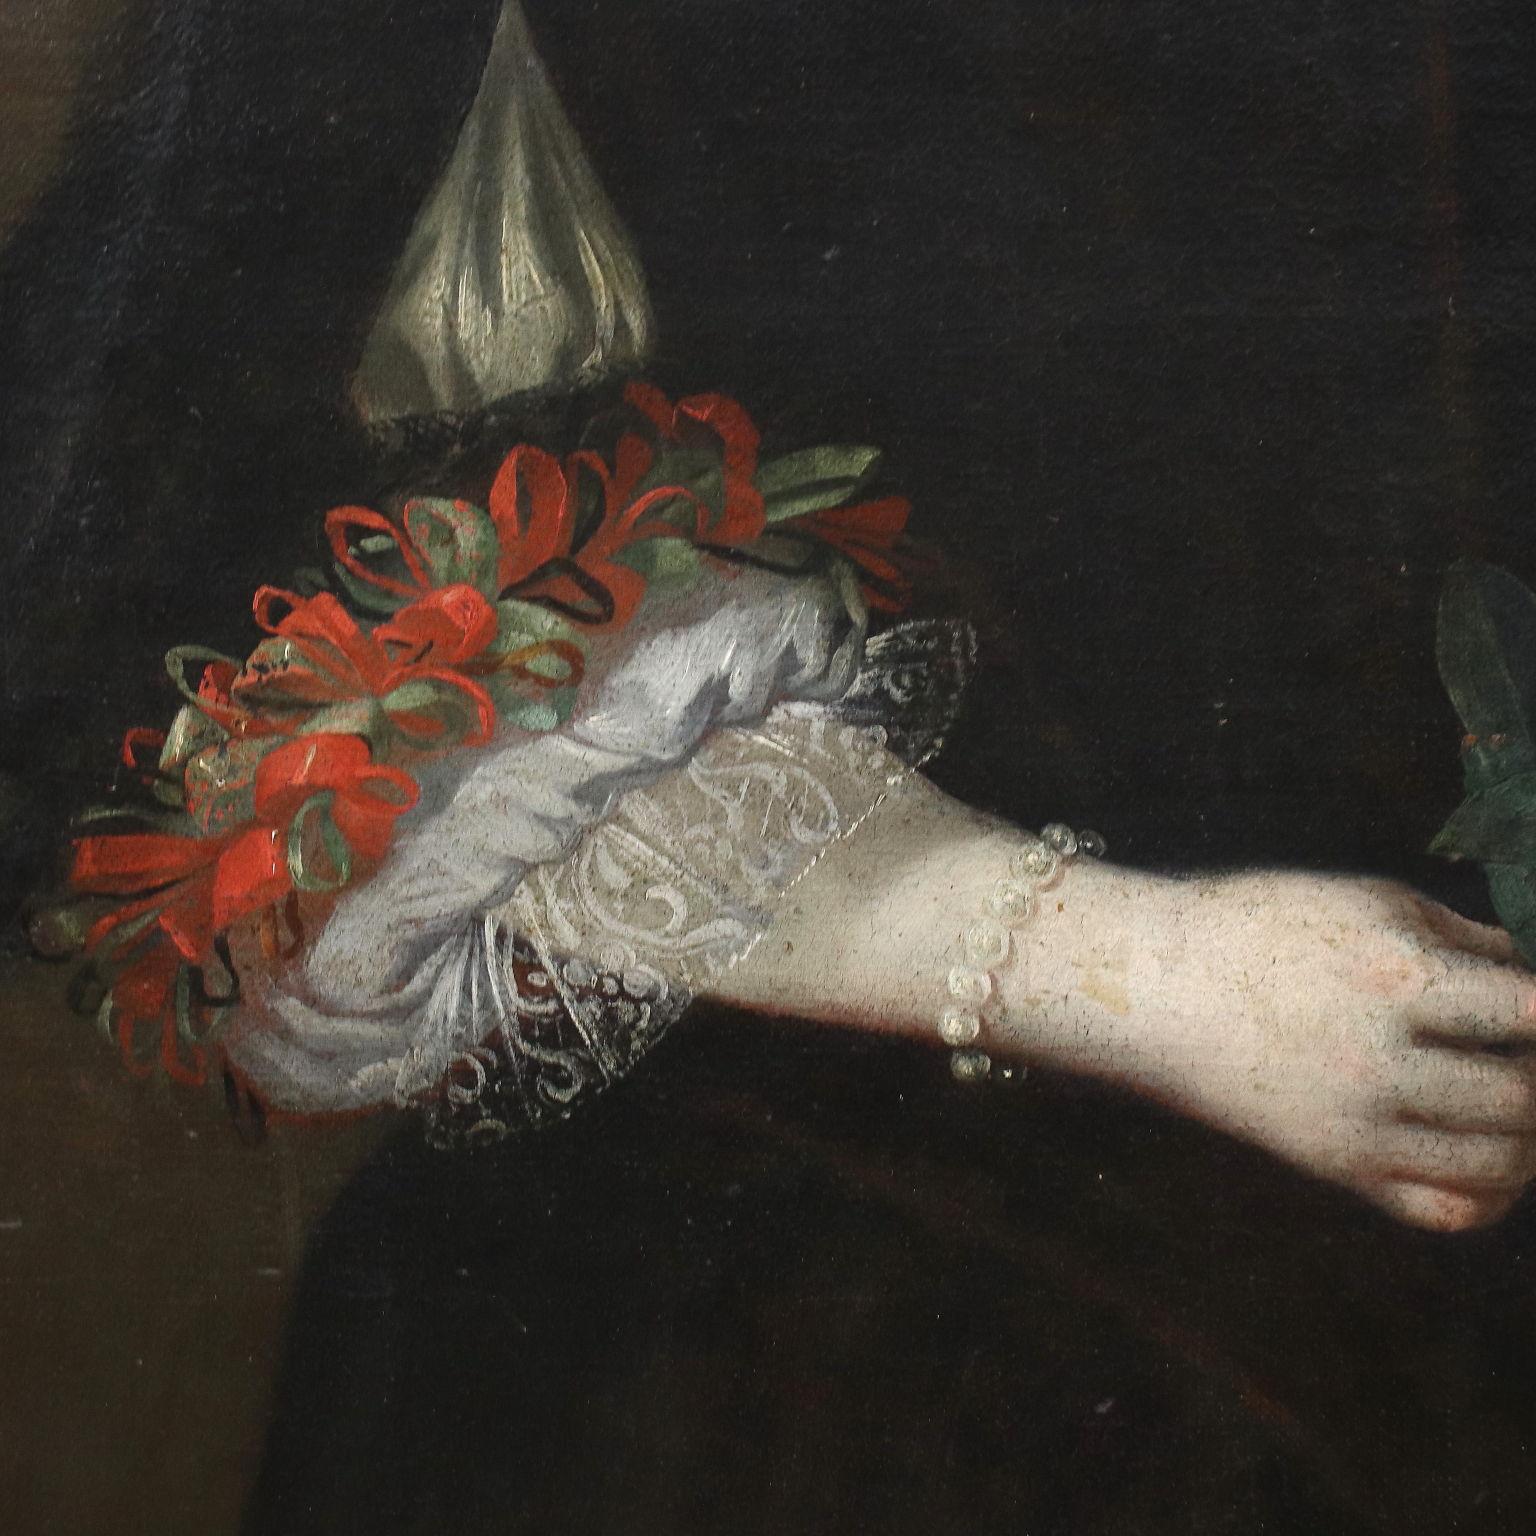 Ölgemälde auf Leinwand. Lombardische Schule des siebzehnten Jahrhunderts. Ein lächelndes junges Mädchen ist in einem eleganten schwarzen Kleid dargestellt, das am Dekolleté mit Spitze und an den Ärmeln mit einem Spiel aus roter und grüner Spitze und